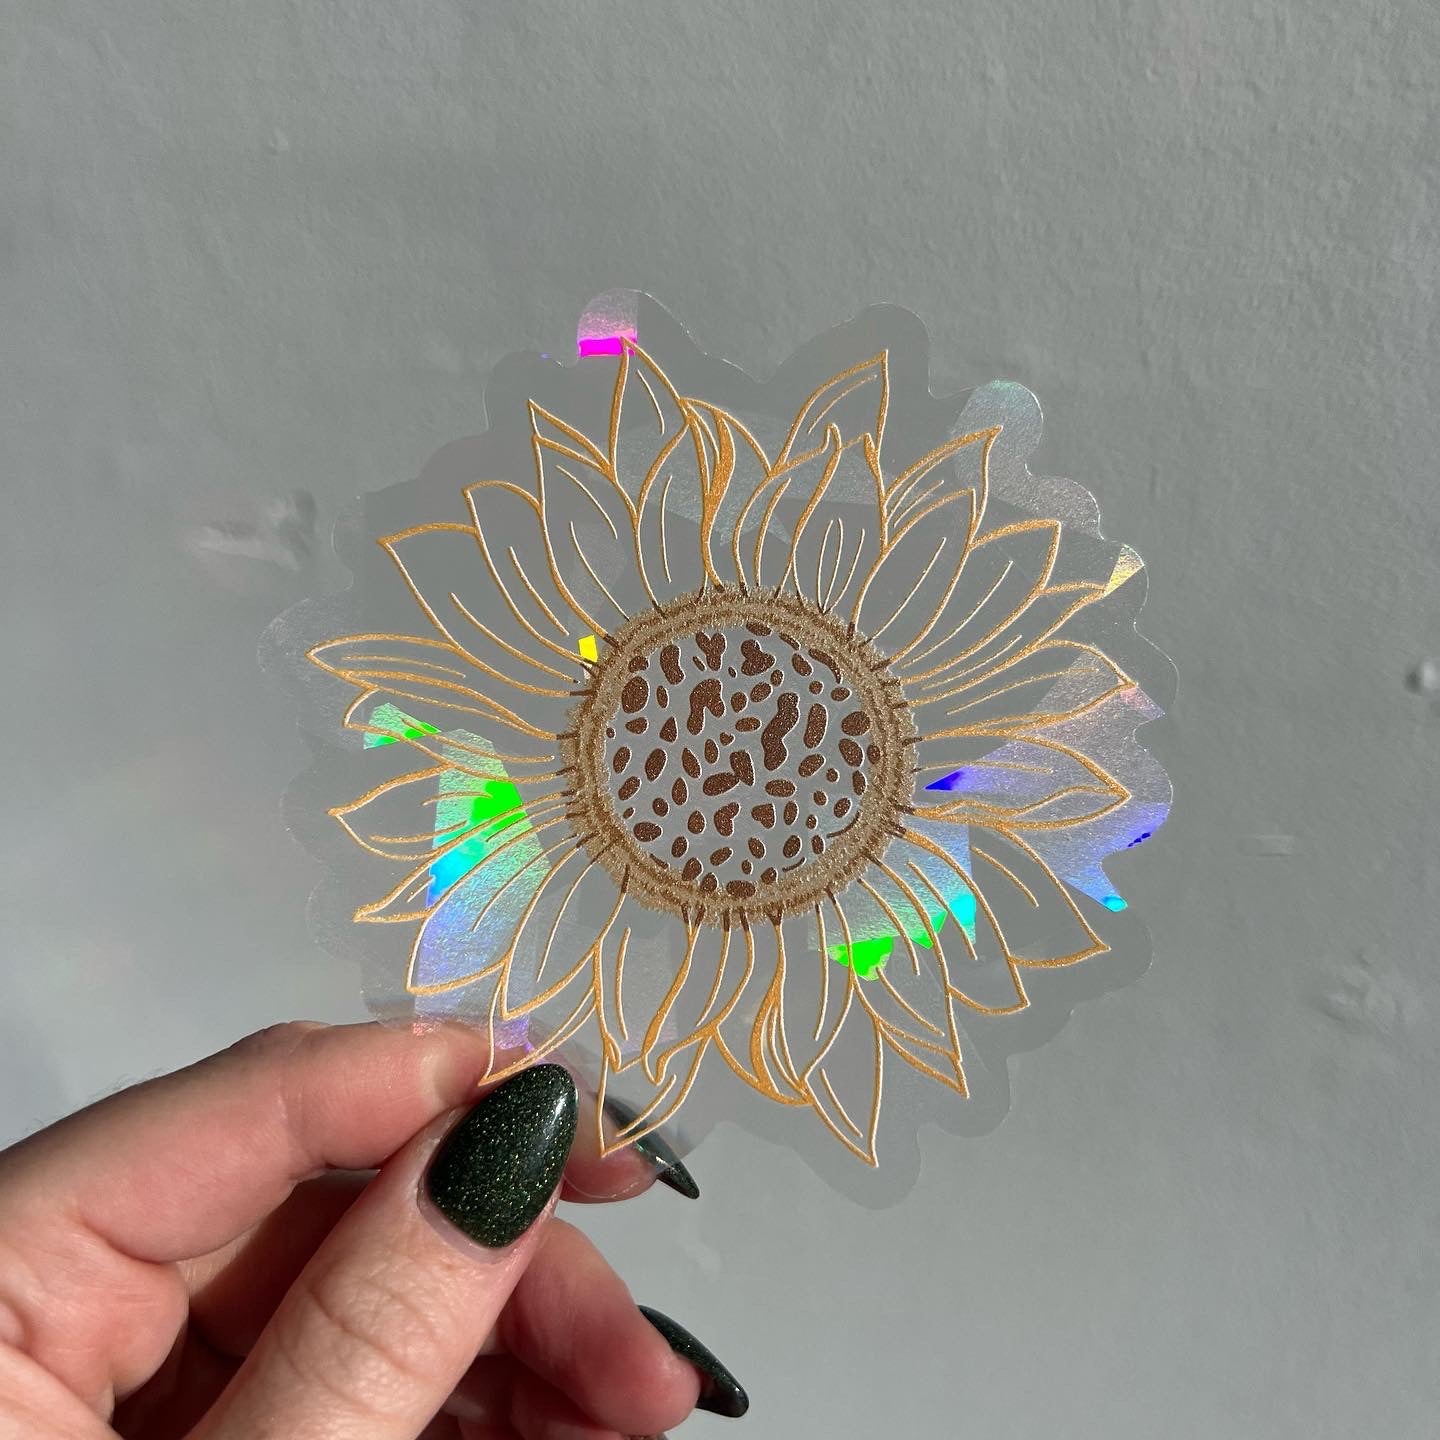 Brighter Days Ahead Flower Shaped Suncatcher Sticker Window Sticker Rainbow  Maker Sticker Sun Catcher Decal 